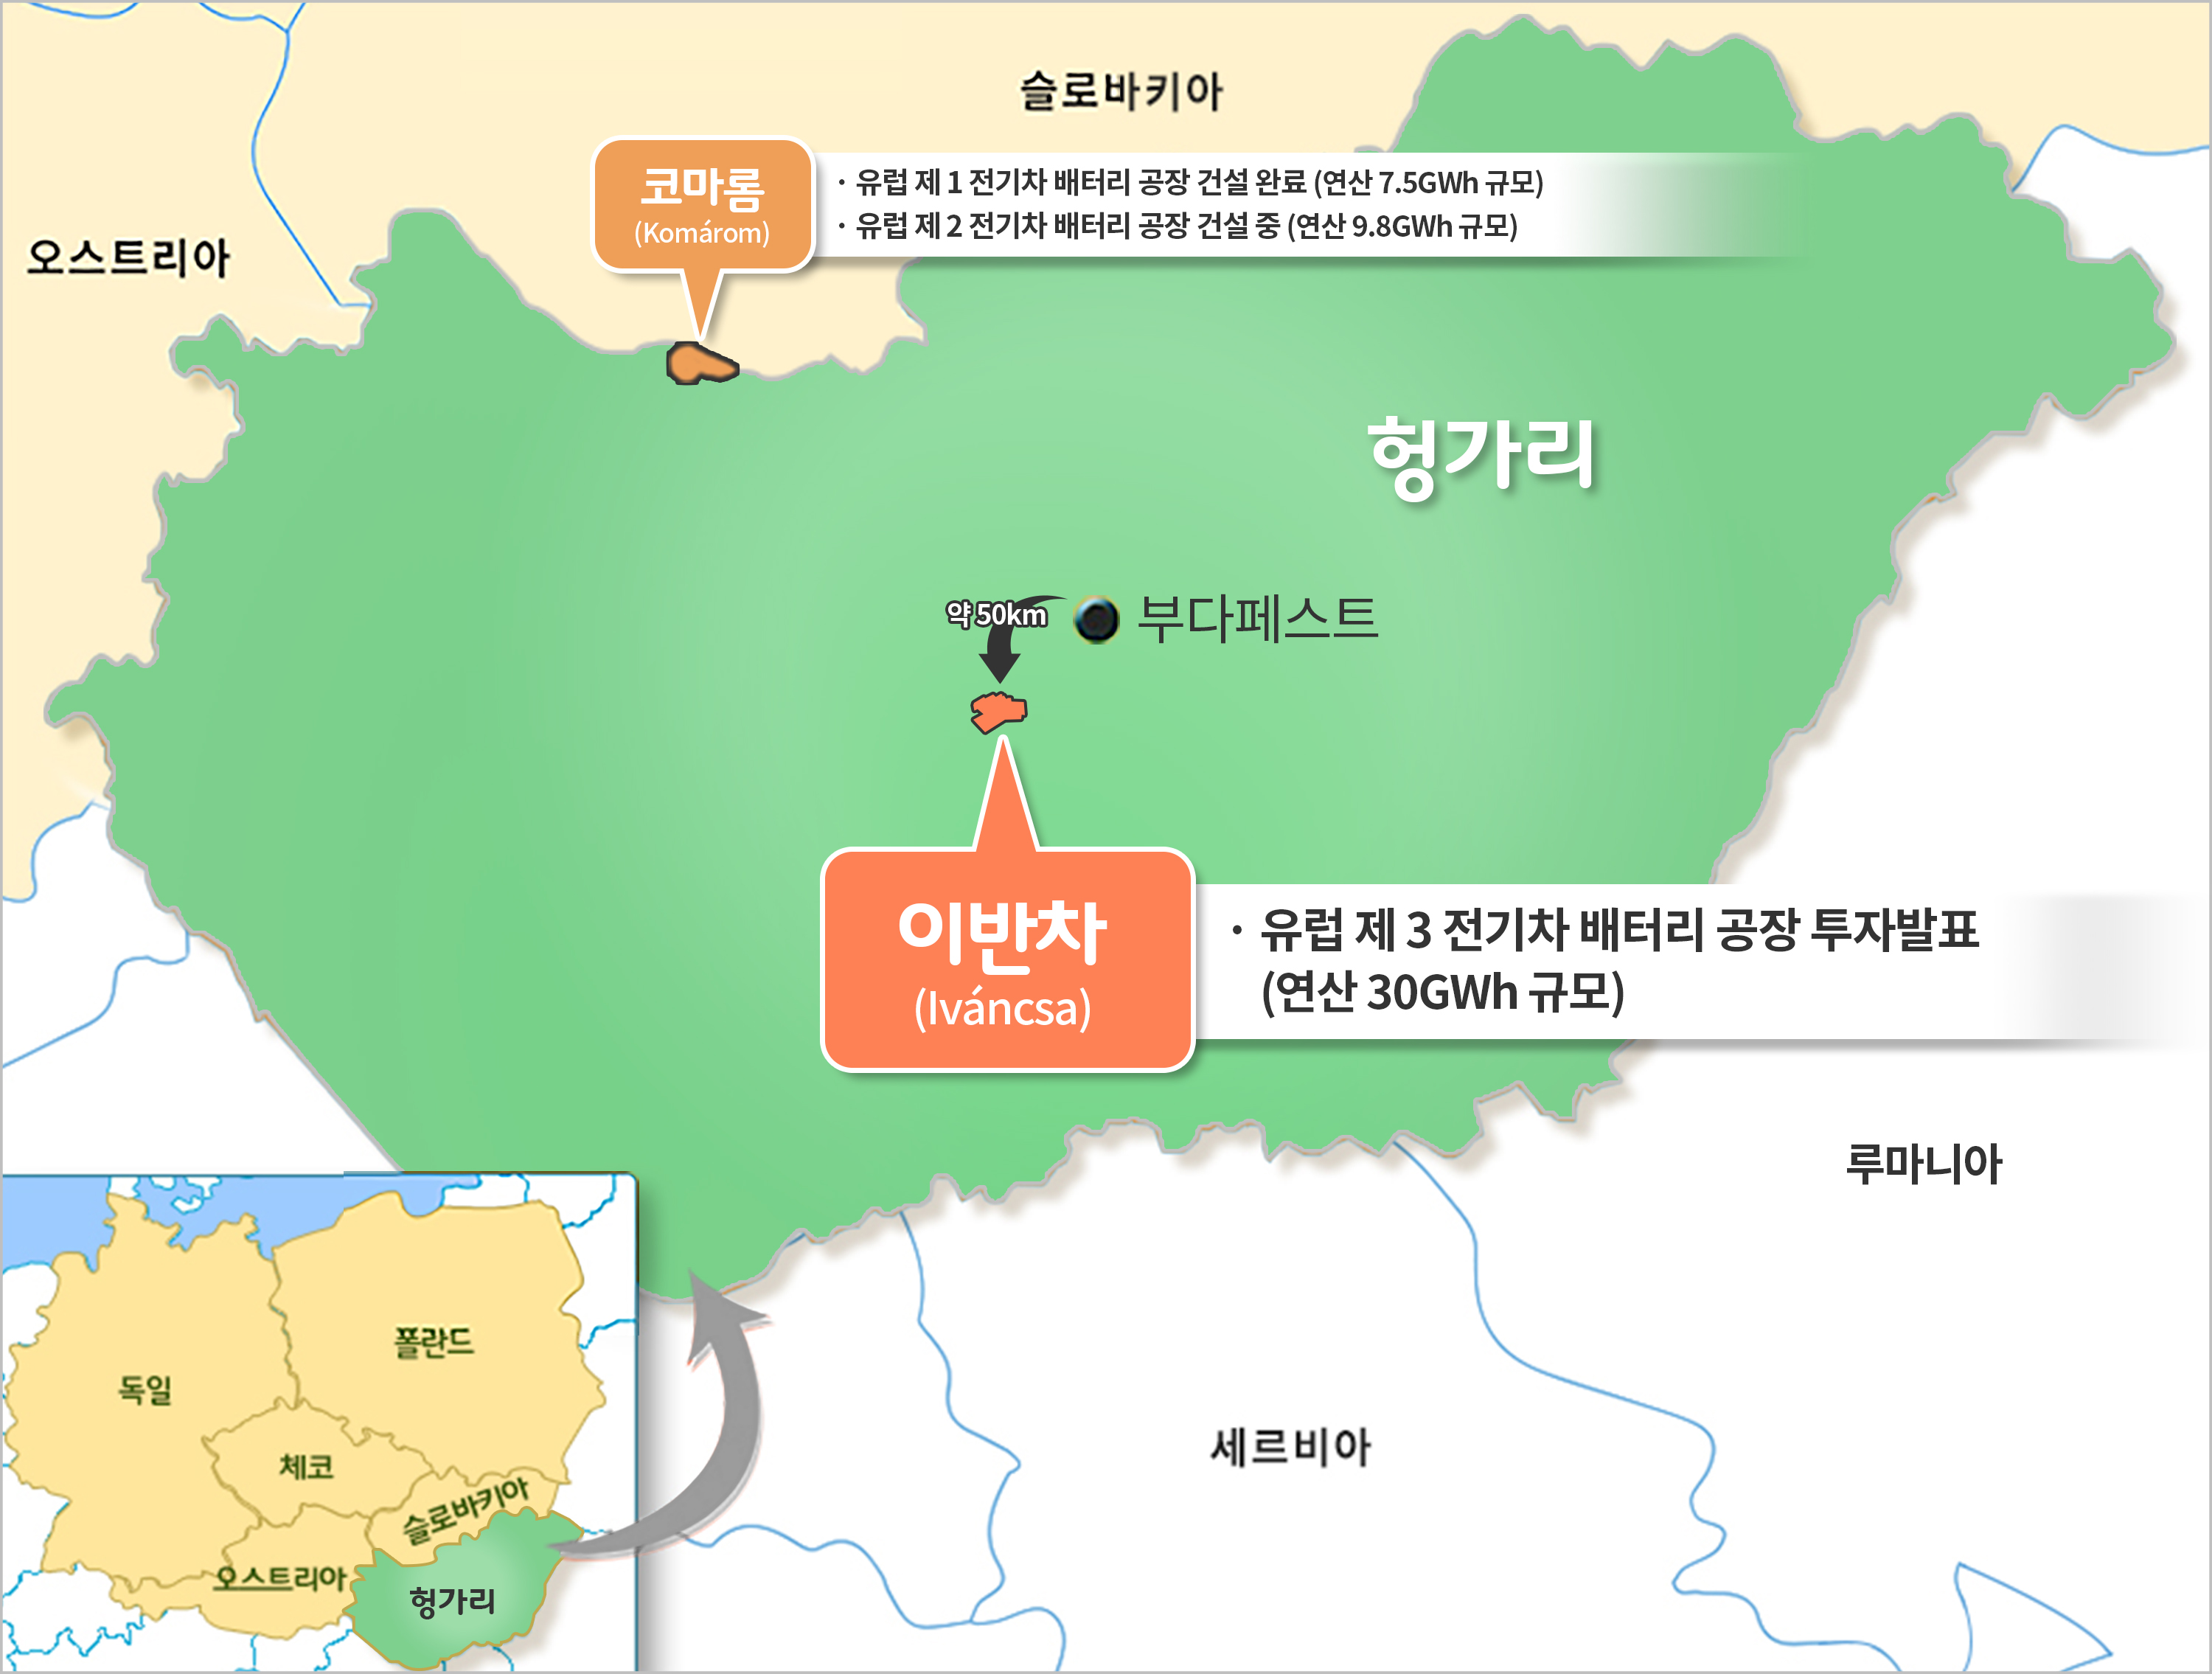 [서울신문] SK, 유례없는 메가 배터리 공장 건설